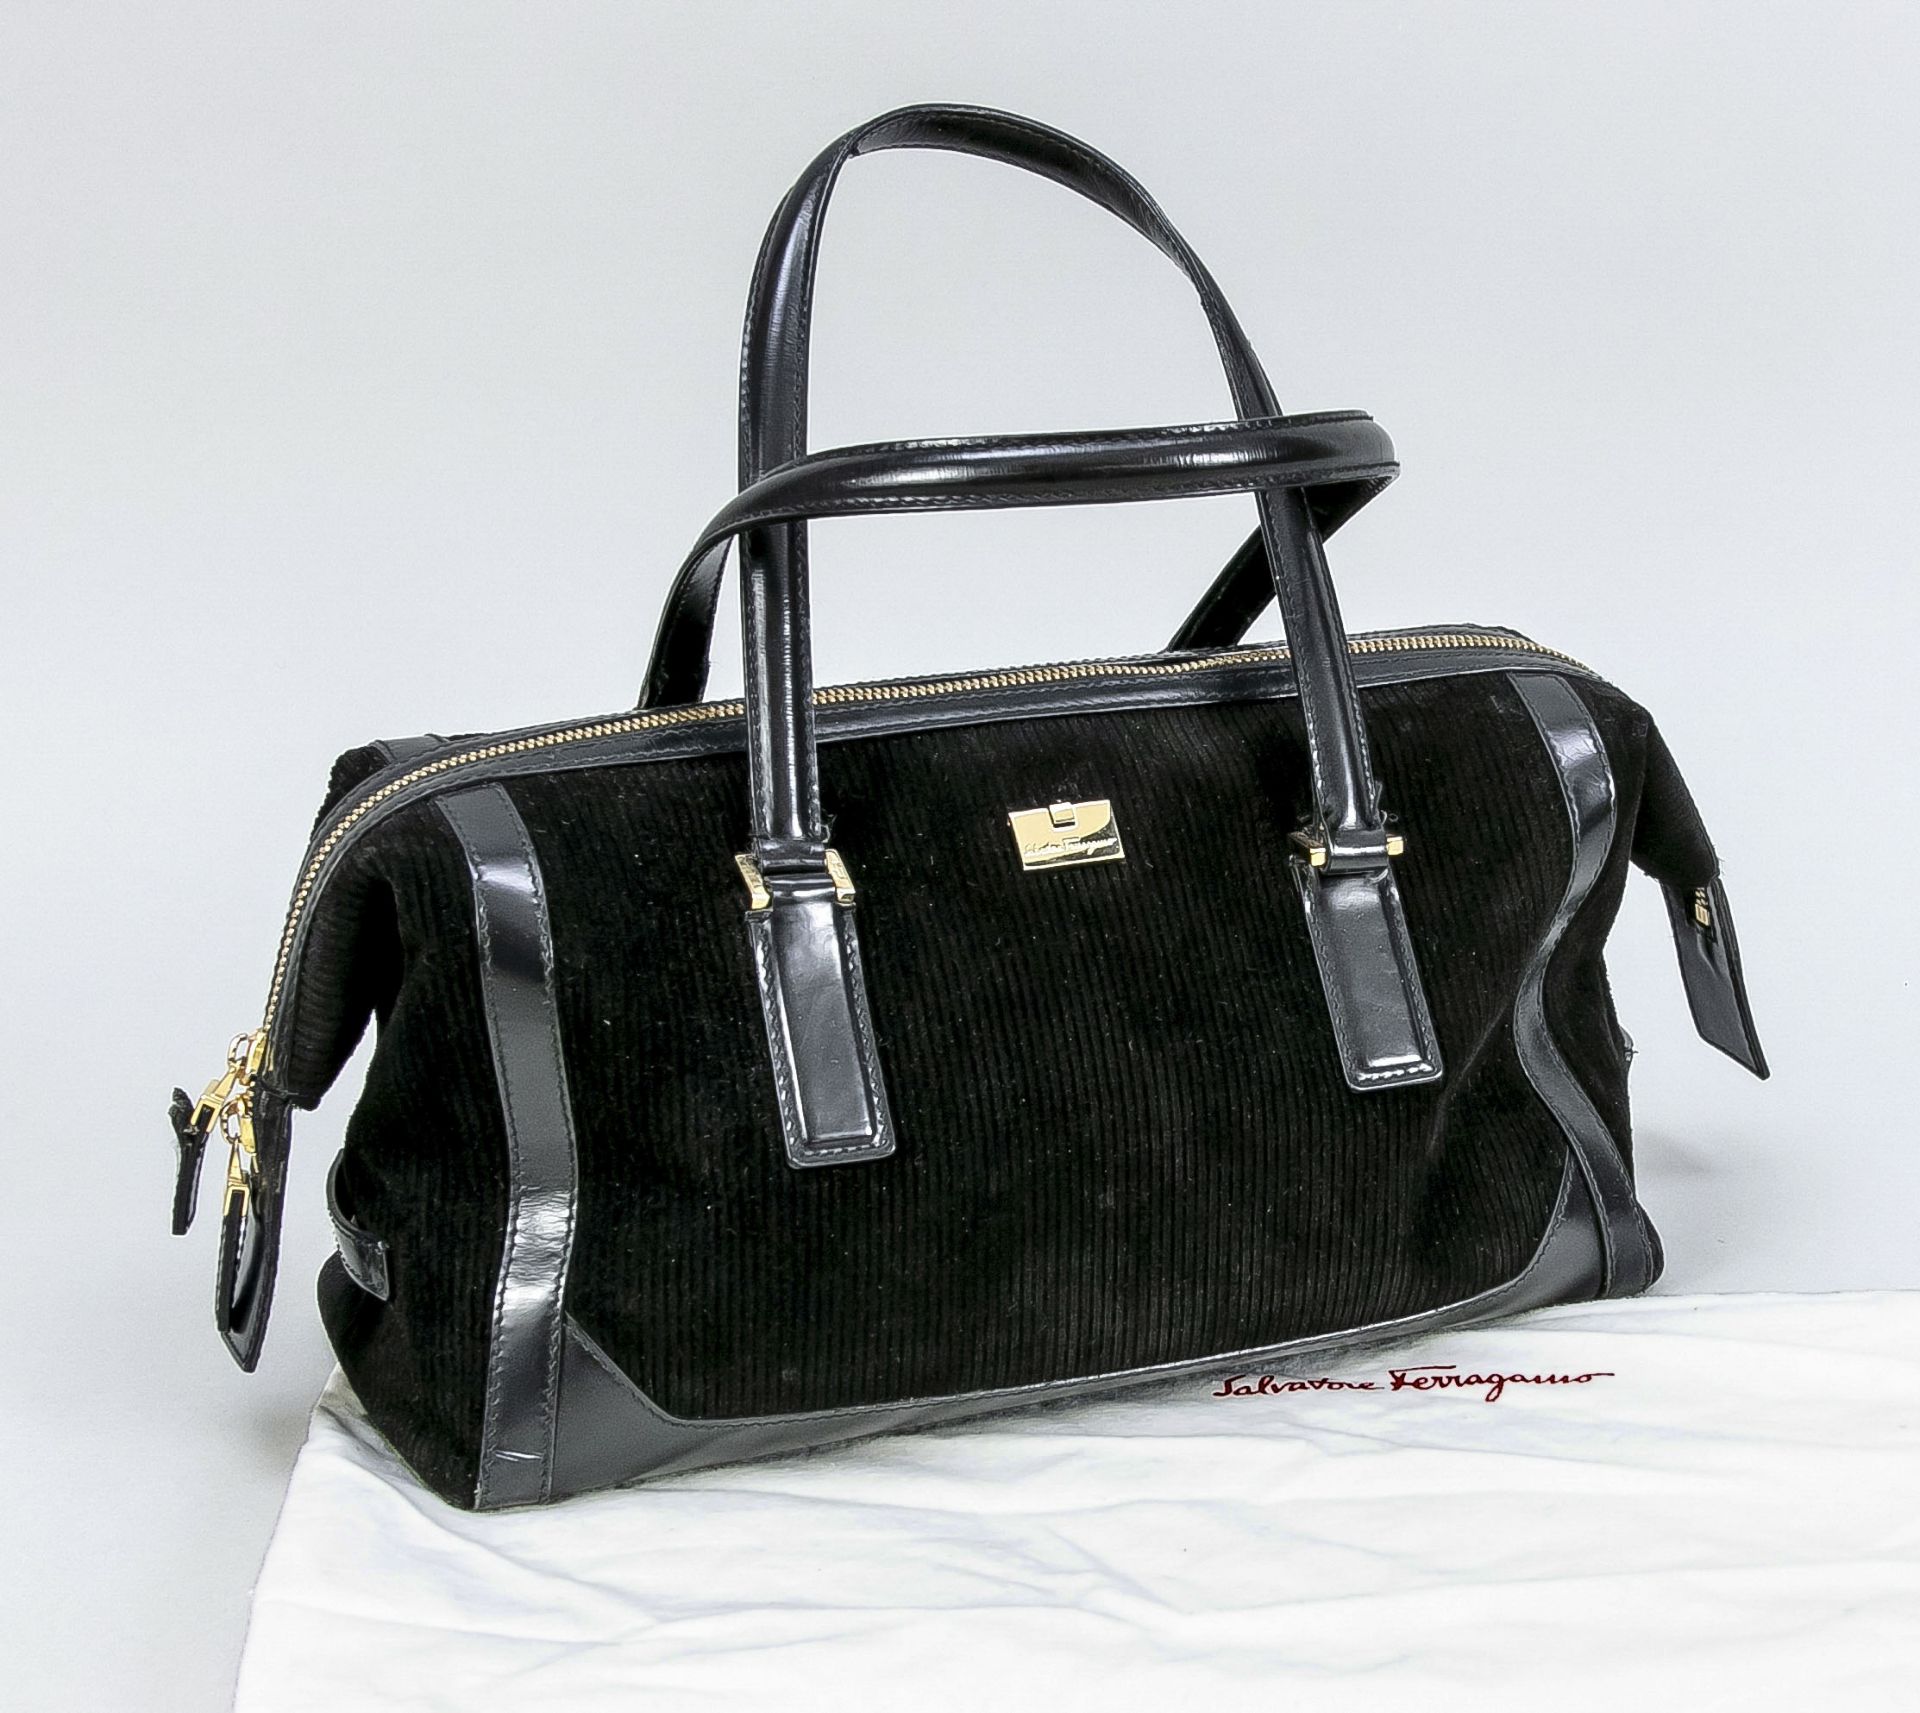 Salvatore Ferragamo, Small Vintage Baguette Bag, black corduroy with black (faux?) leather